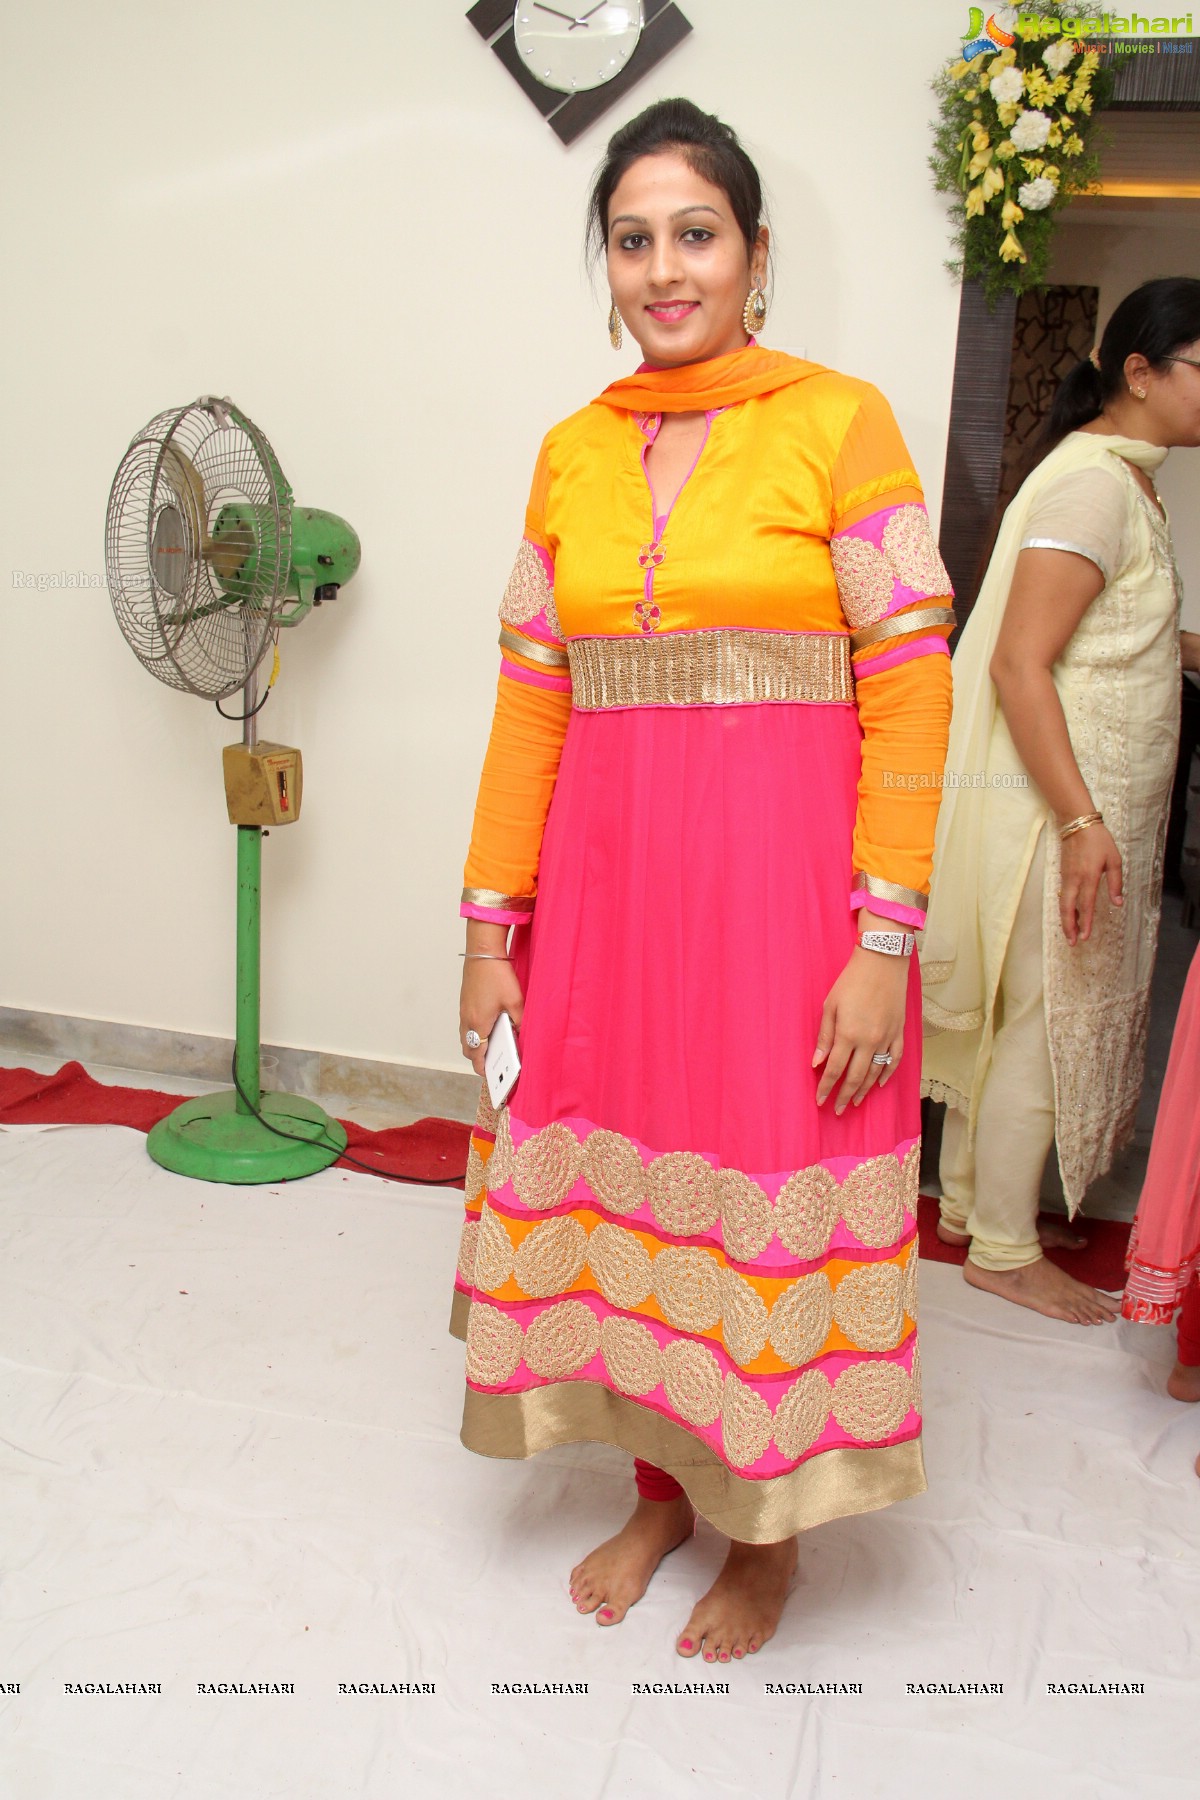 Harjeet Singh Bagga's Housewarming Ceremony, Hyderabad